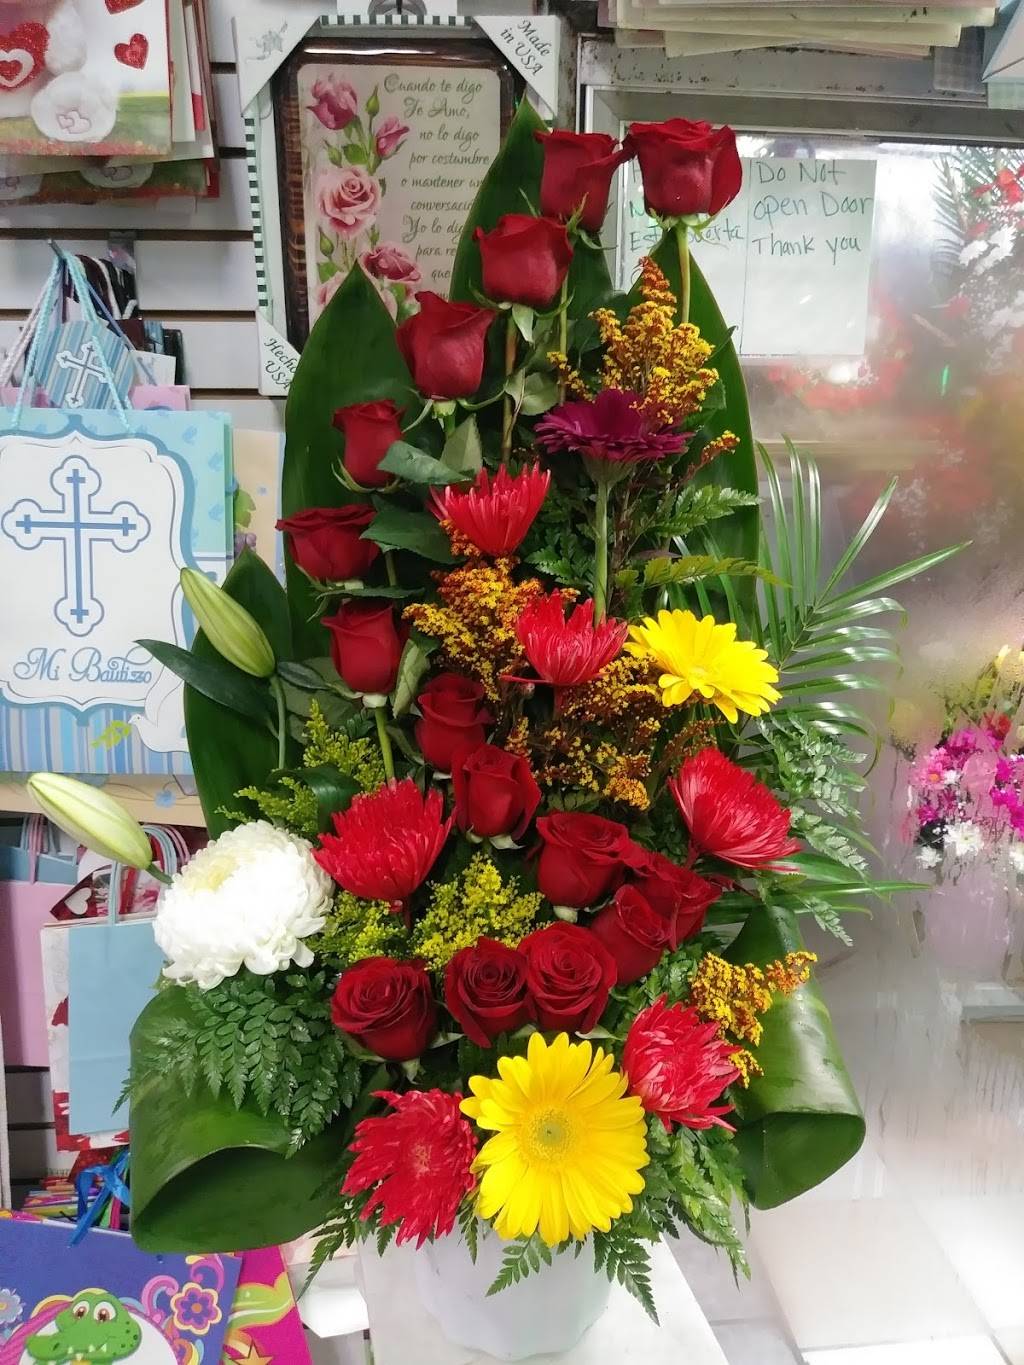 Santos Flowers | 1628 S Main St, Santa Ana, CA 92707 | Phone: (714) 556-8197